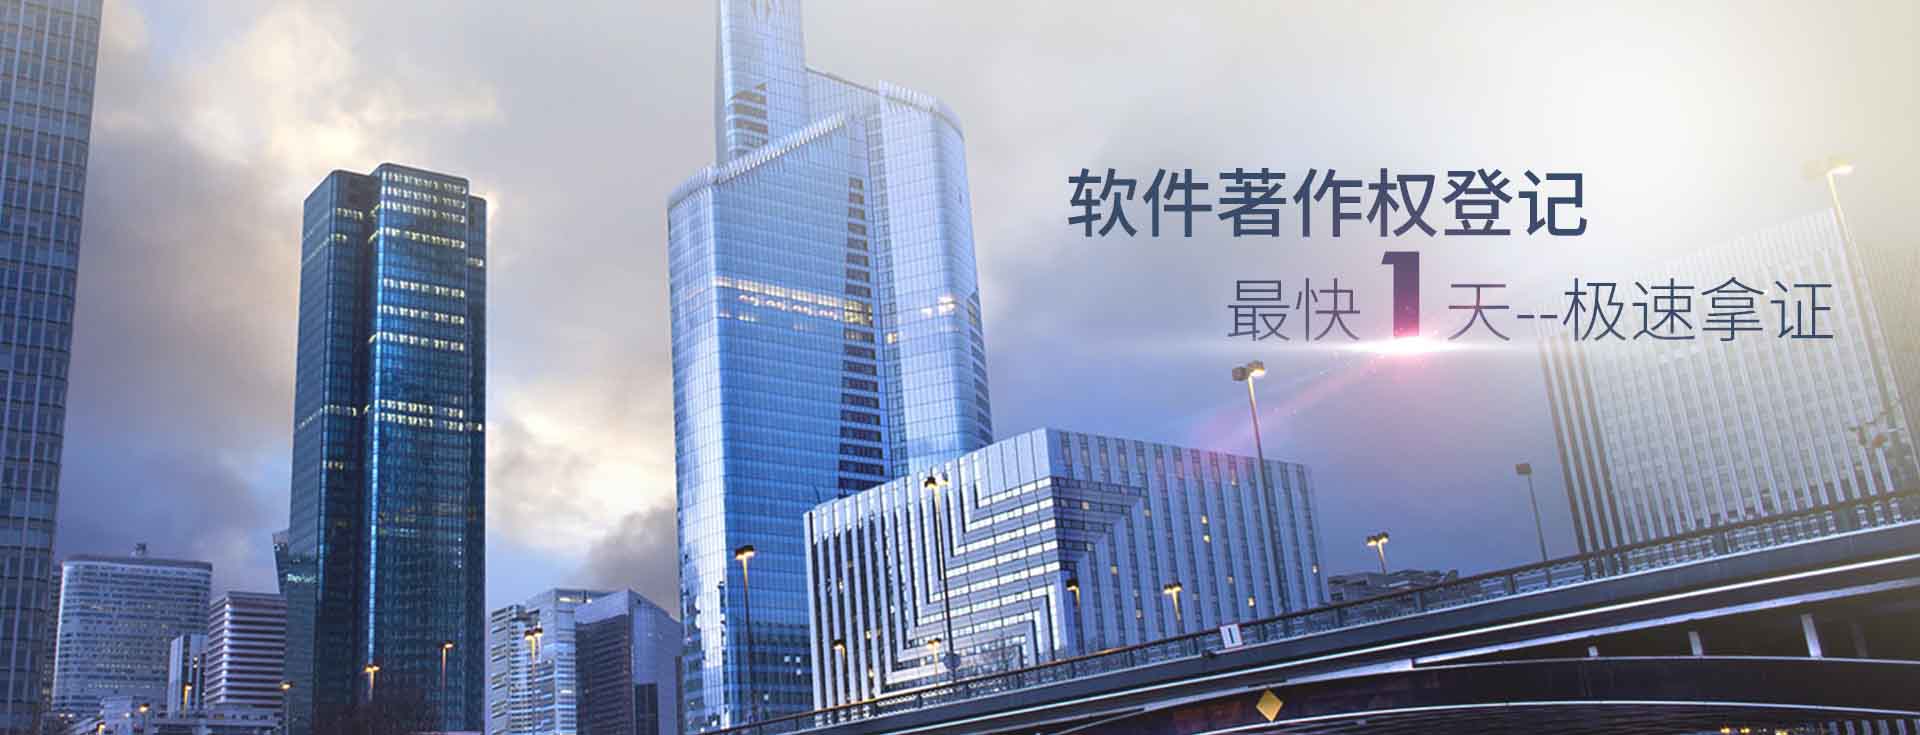 深圳市恒大光汇企业管理有限公司